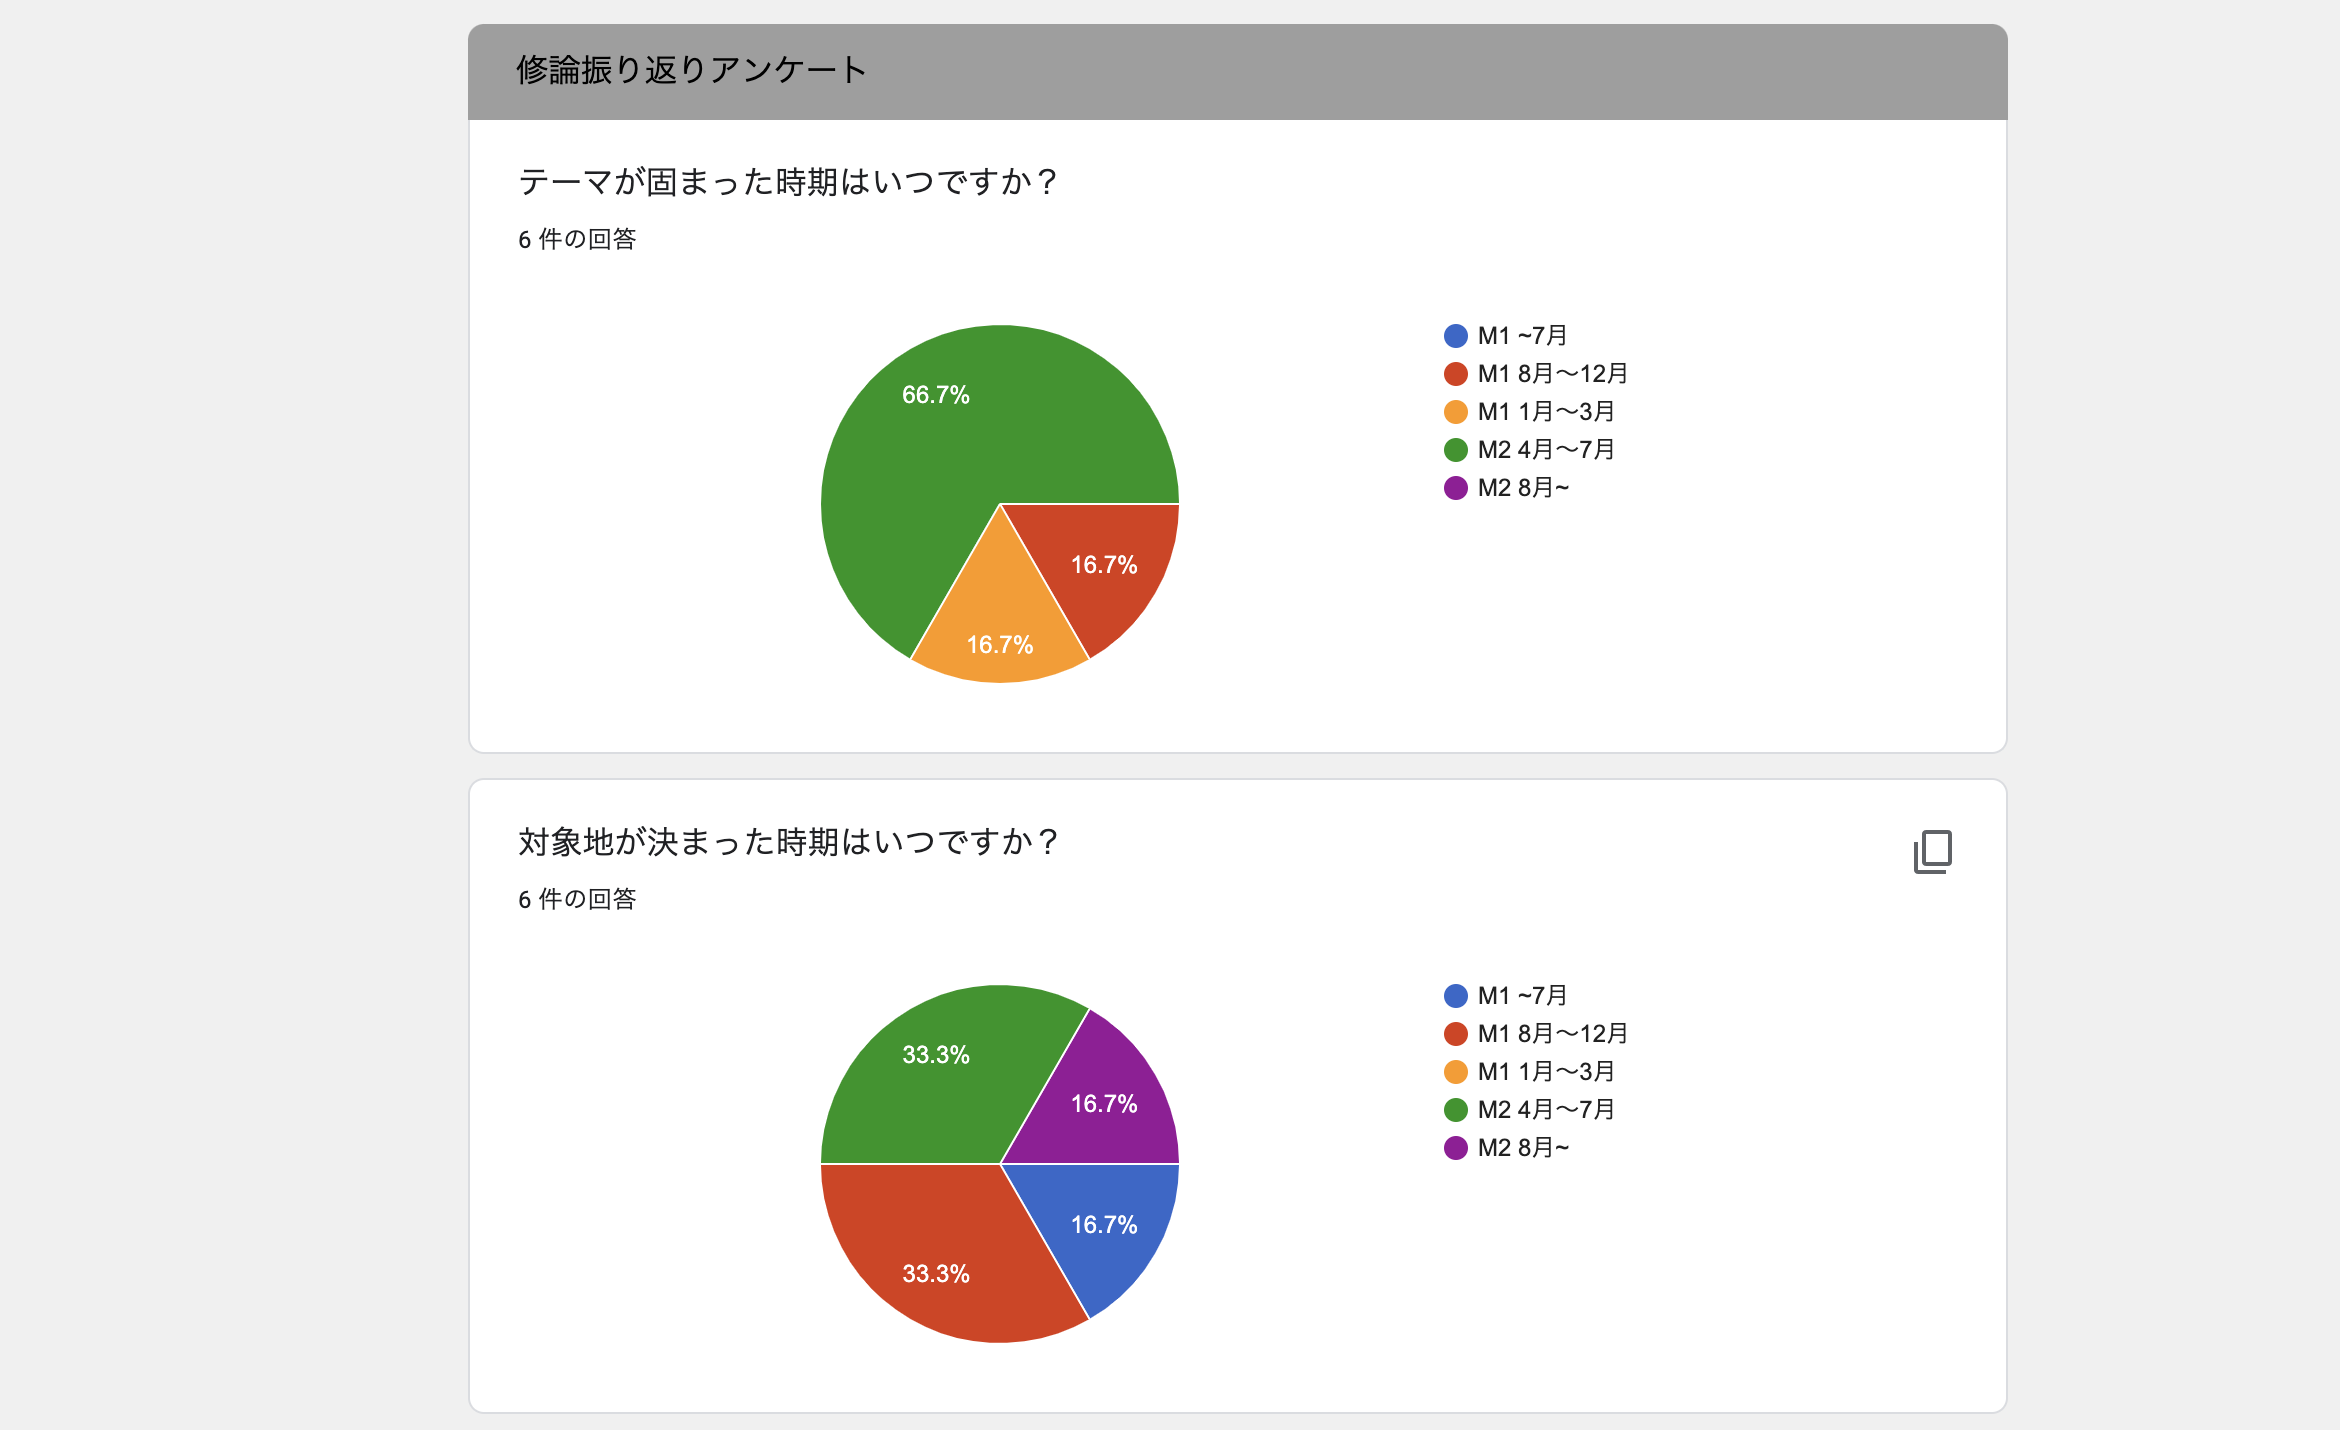 http://ud.t.u-tokyo.ac.jp/blog/_images/2103_WEB%E3%83%9E%E3%82%AB%E3%82%99_%E4%BF%AE%E8%AB%96%E6%8C%AF%E3%82%8A%E8%BF%94%E3%82%8A.png